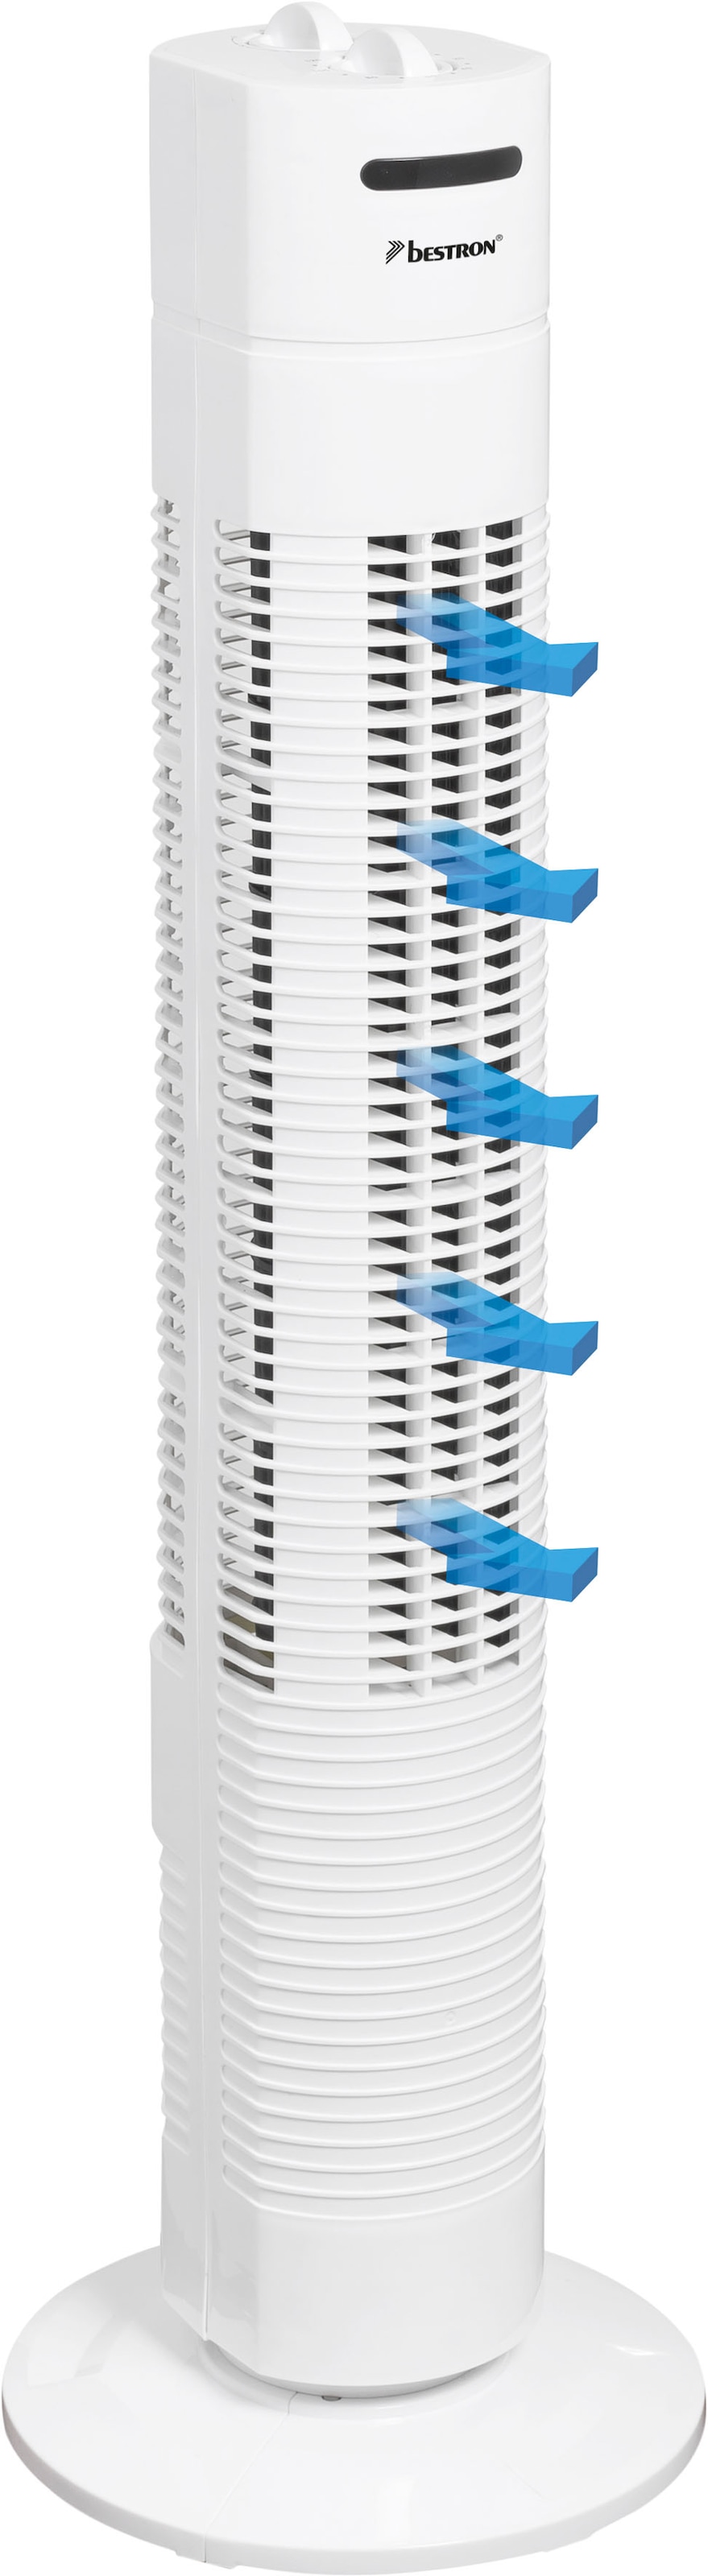 bestron Turmventilator "mit Schwenkfunktion", Höhe: 75 cm, 50 W, Weiß